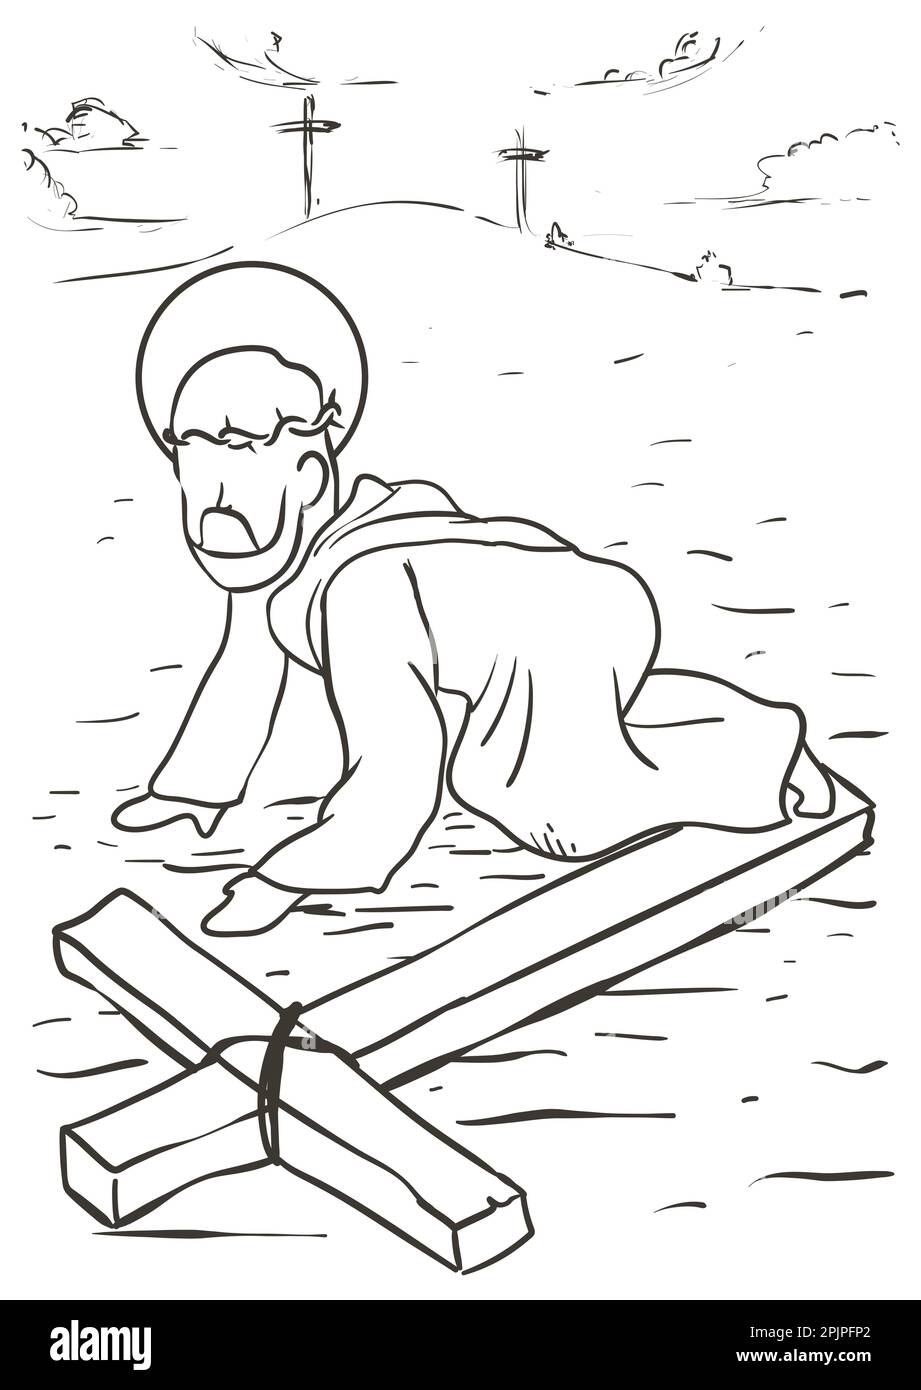 Zeichnung der Via Crucis, die die neunte Station repräsentiert: Jesus fällt erschöpft auf dem langen Weg nach Calvary. Stock Vektor